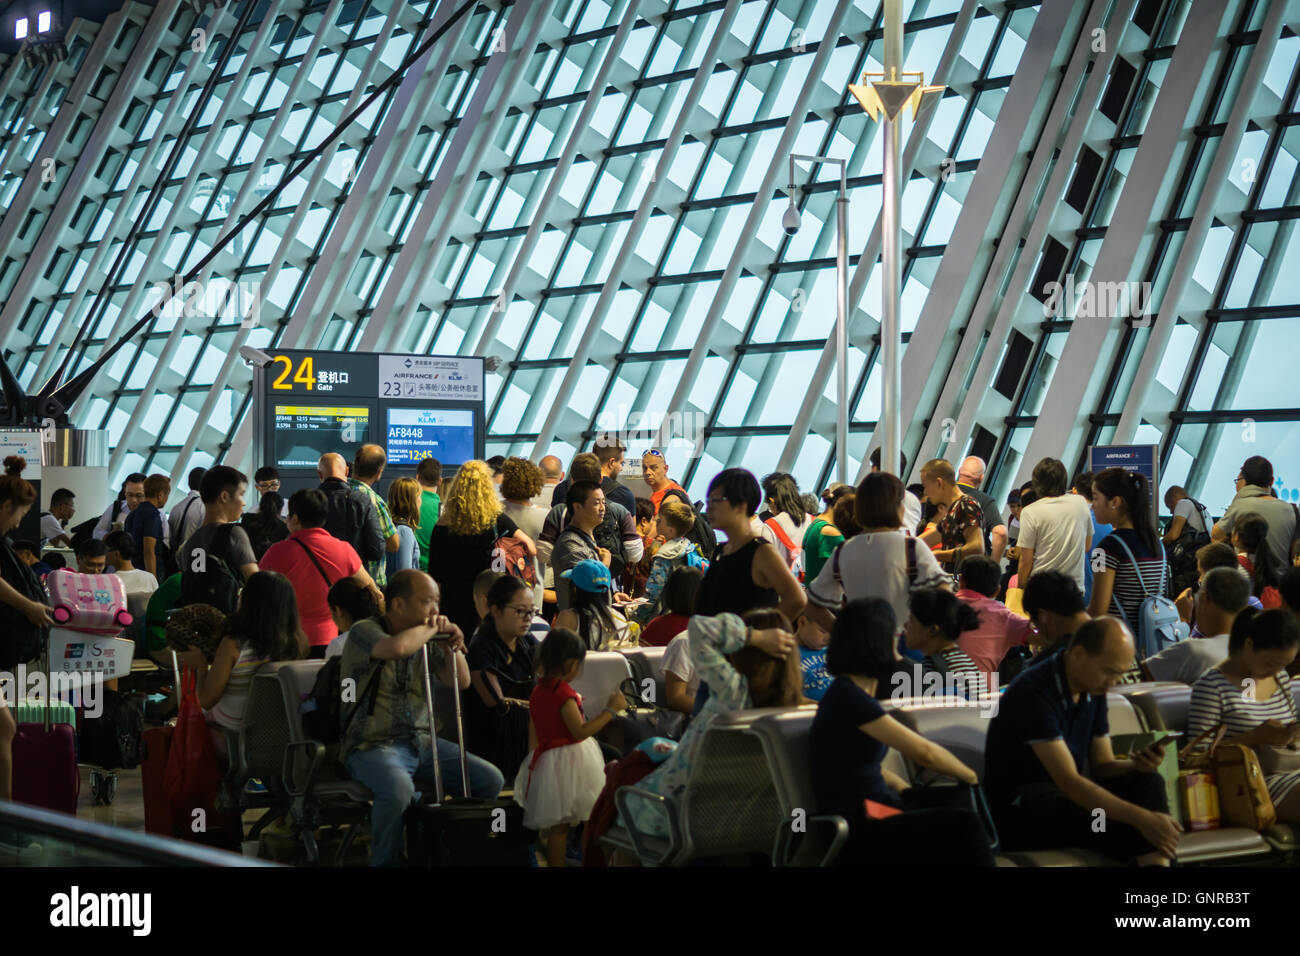 Shanghai, Cina - circa agosto 2016: passeggeri in attesa a affollata gate di partenza dopo il tempo di ritardo, Shanghai Pudong Airport, Cina. Foto Stock